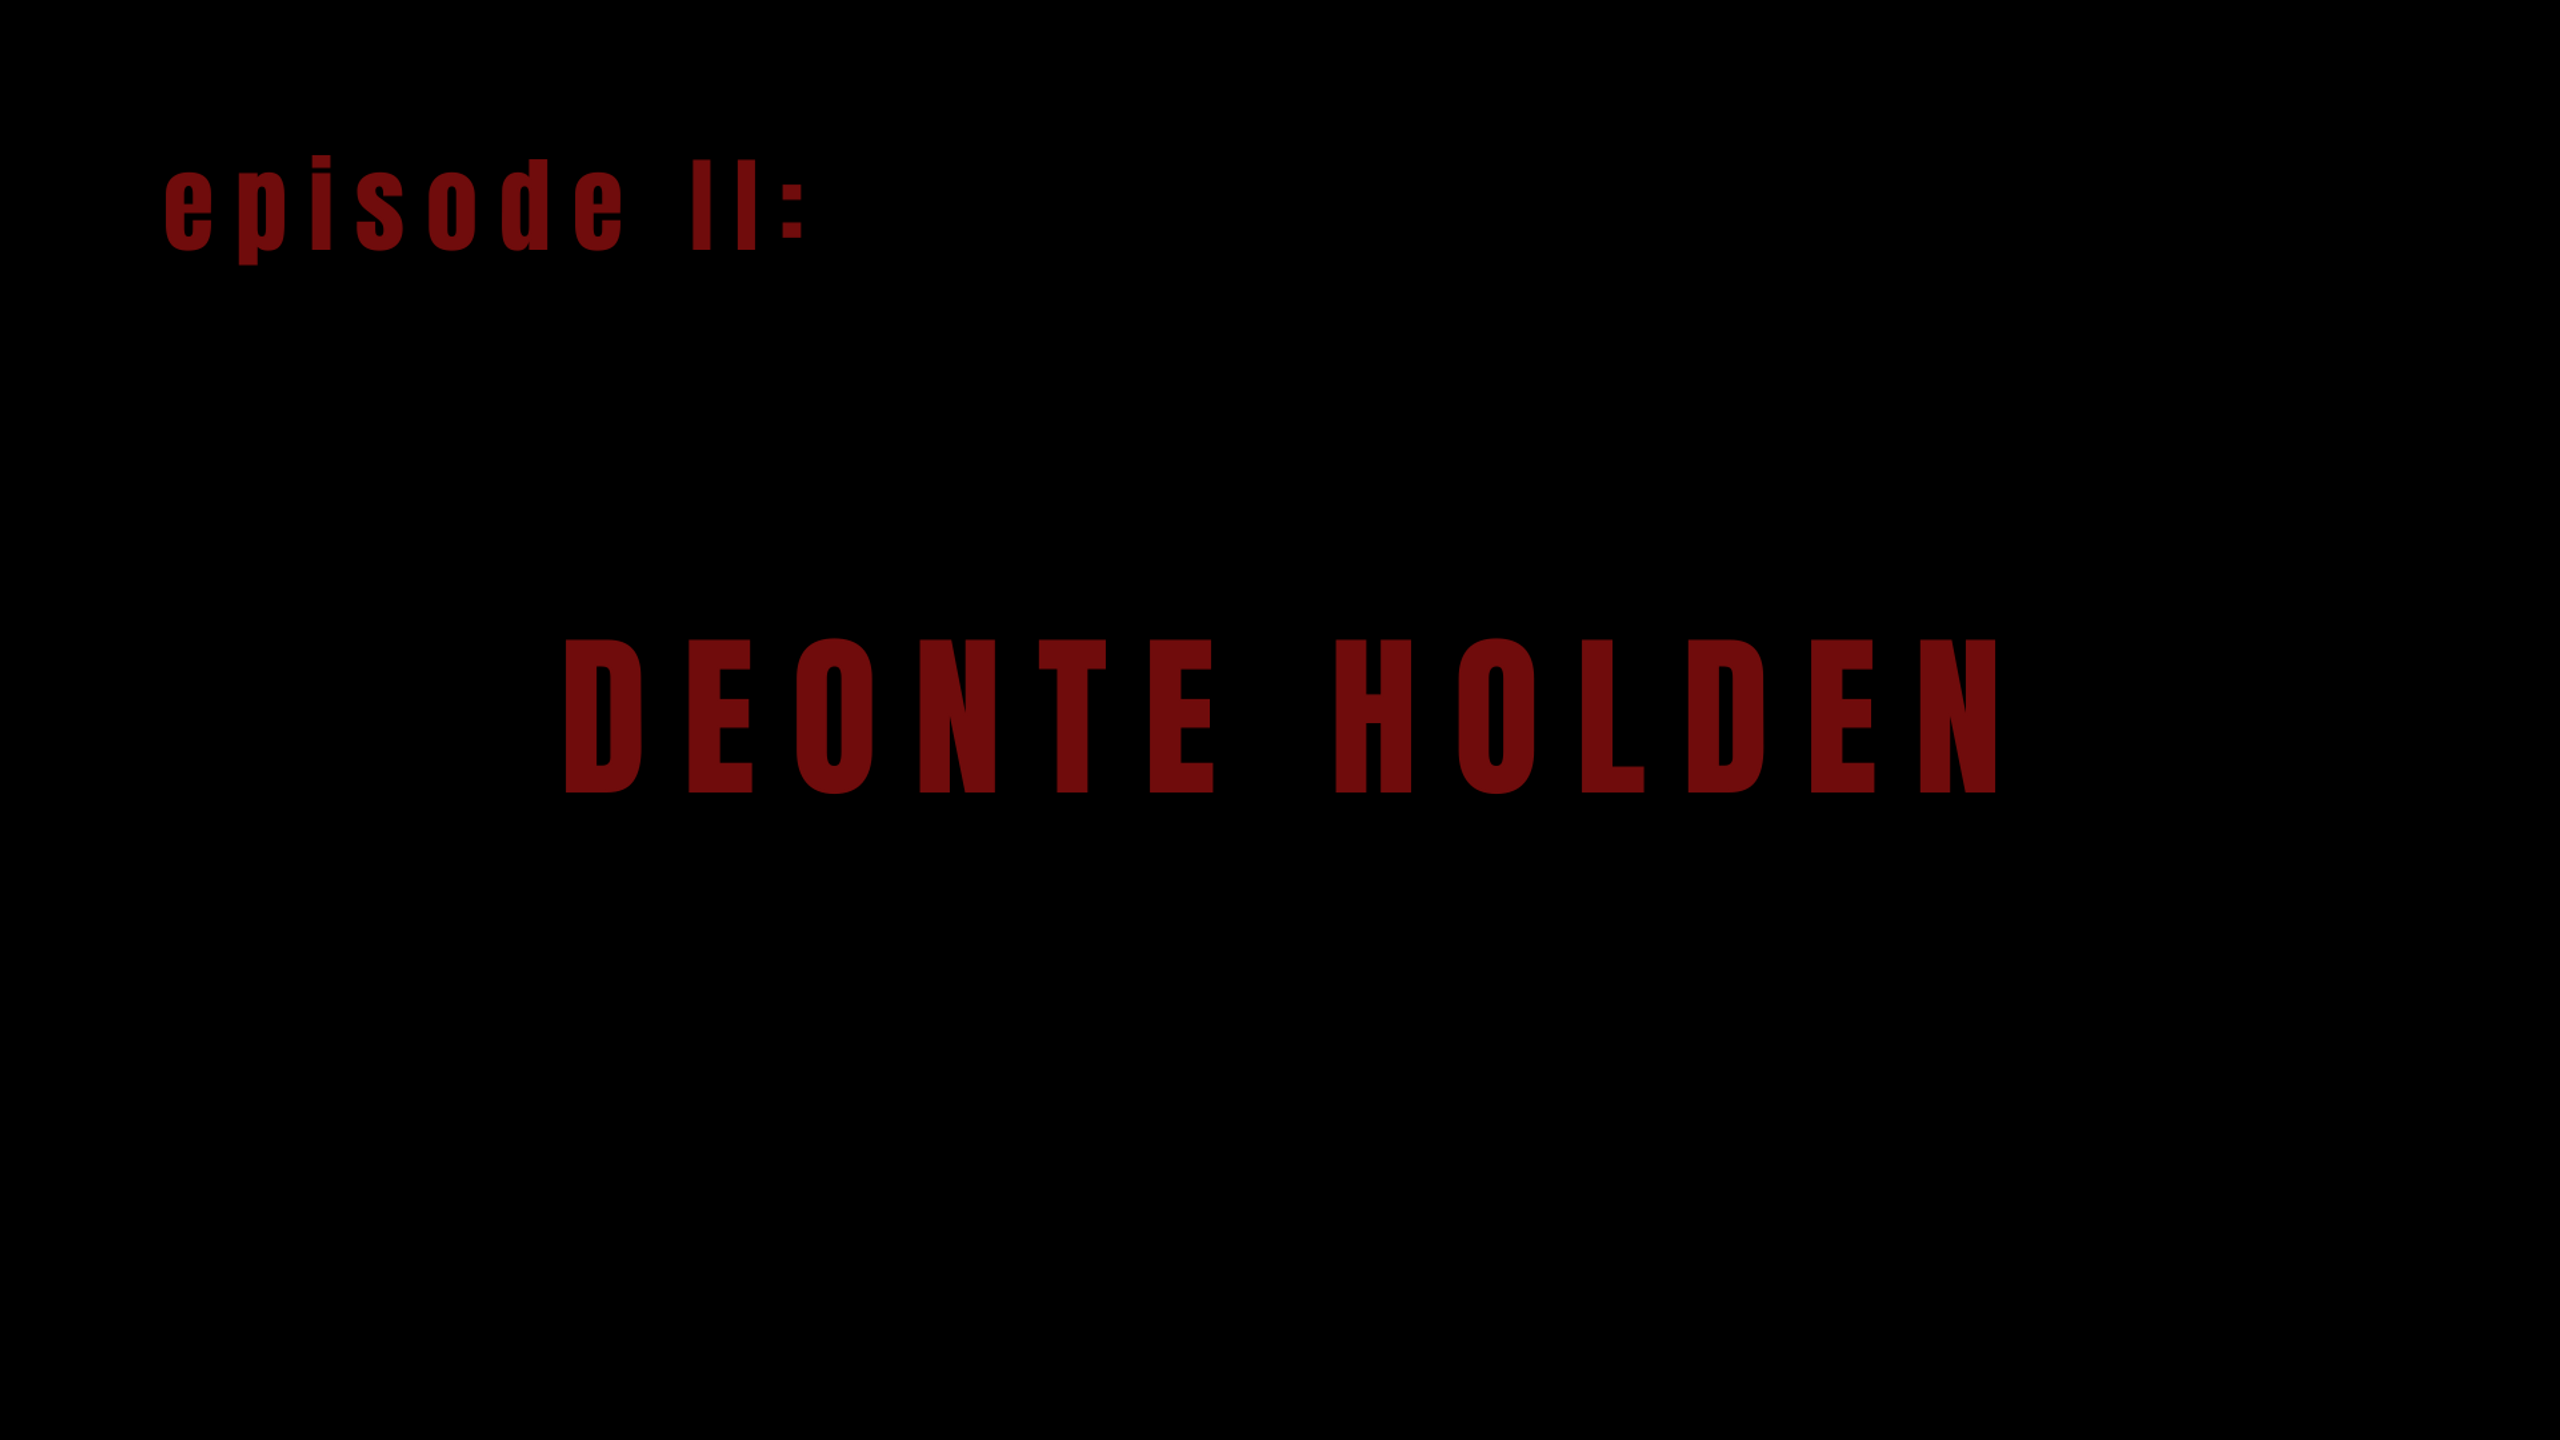 Episode II: Deonte Holden